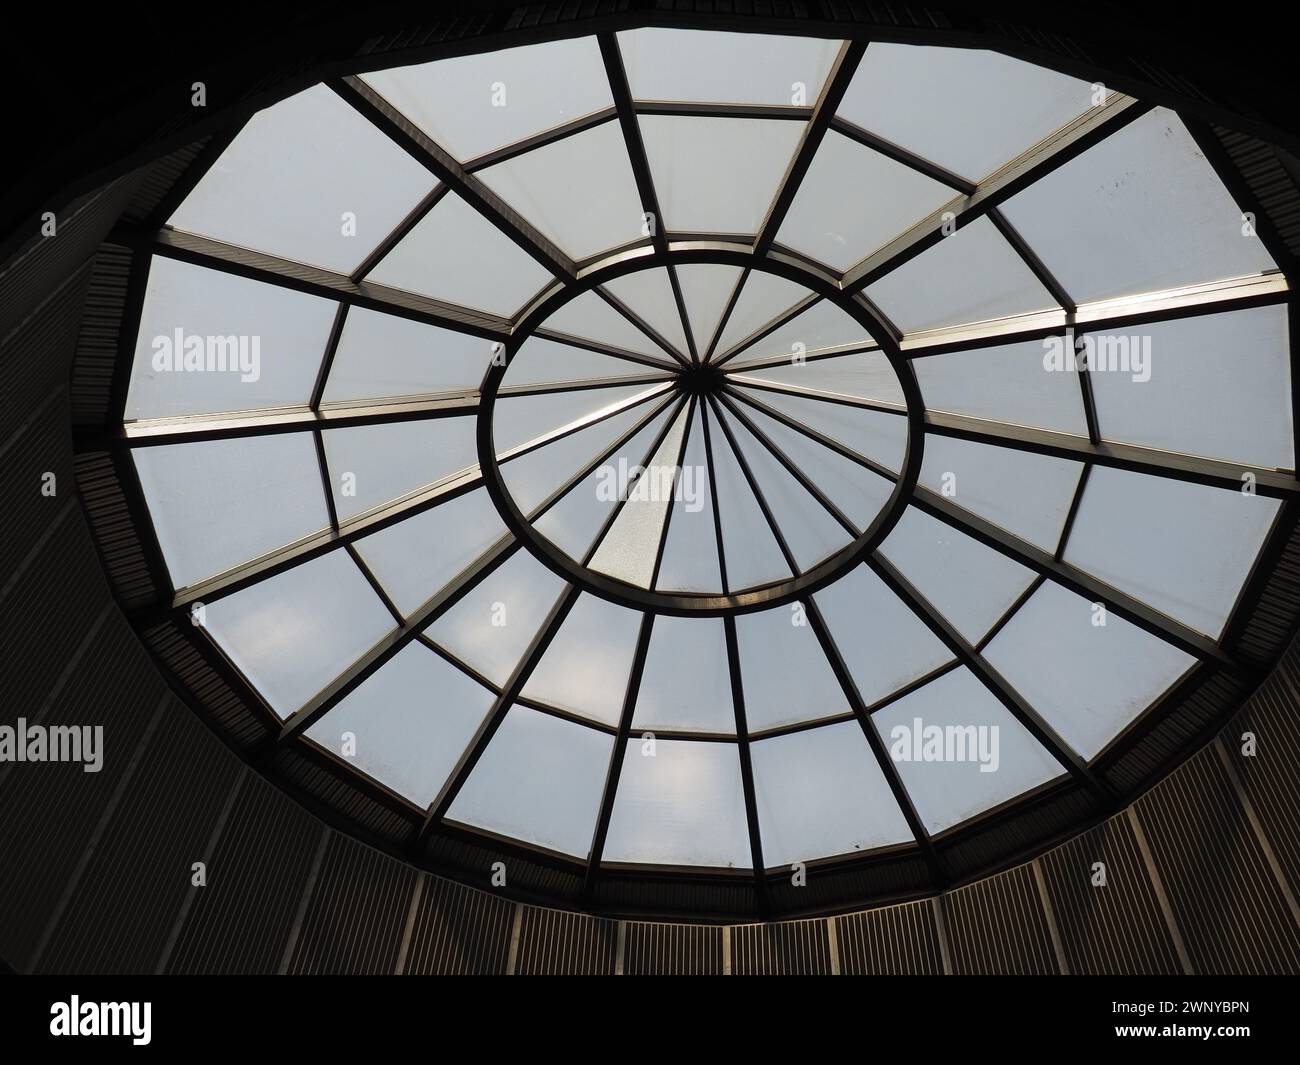 Cupola in vetro o finestrino rotondo nel tetto. Il cielo può essere visto attraverso una struttura trasparente in vetro nella volta dell'edificio. Stile architettonico Foto Stock